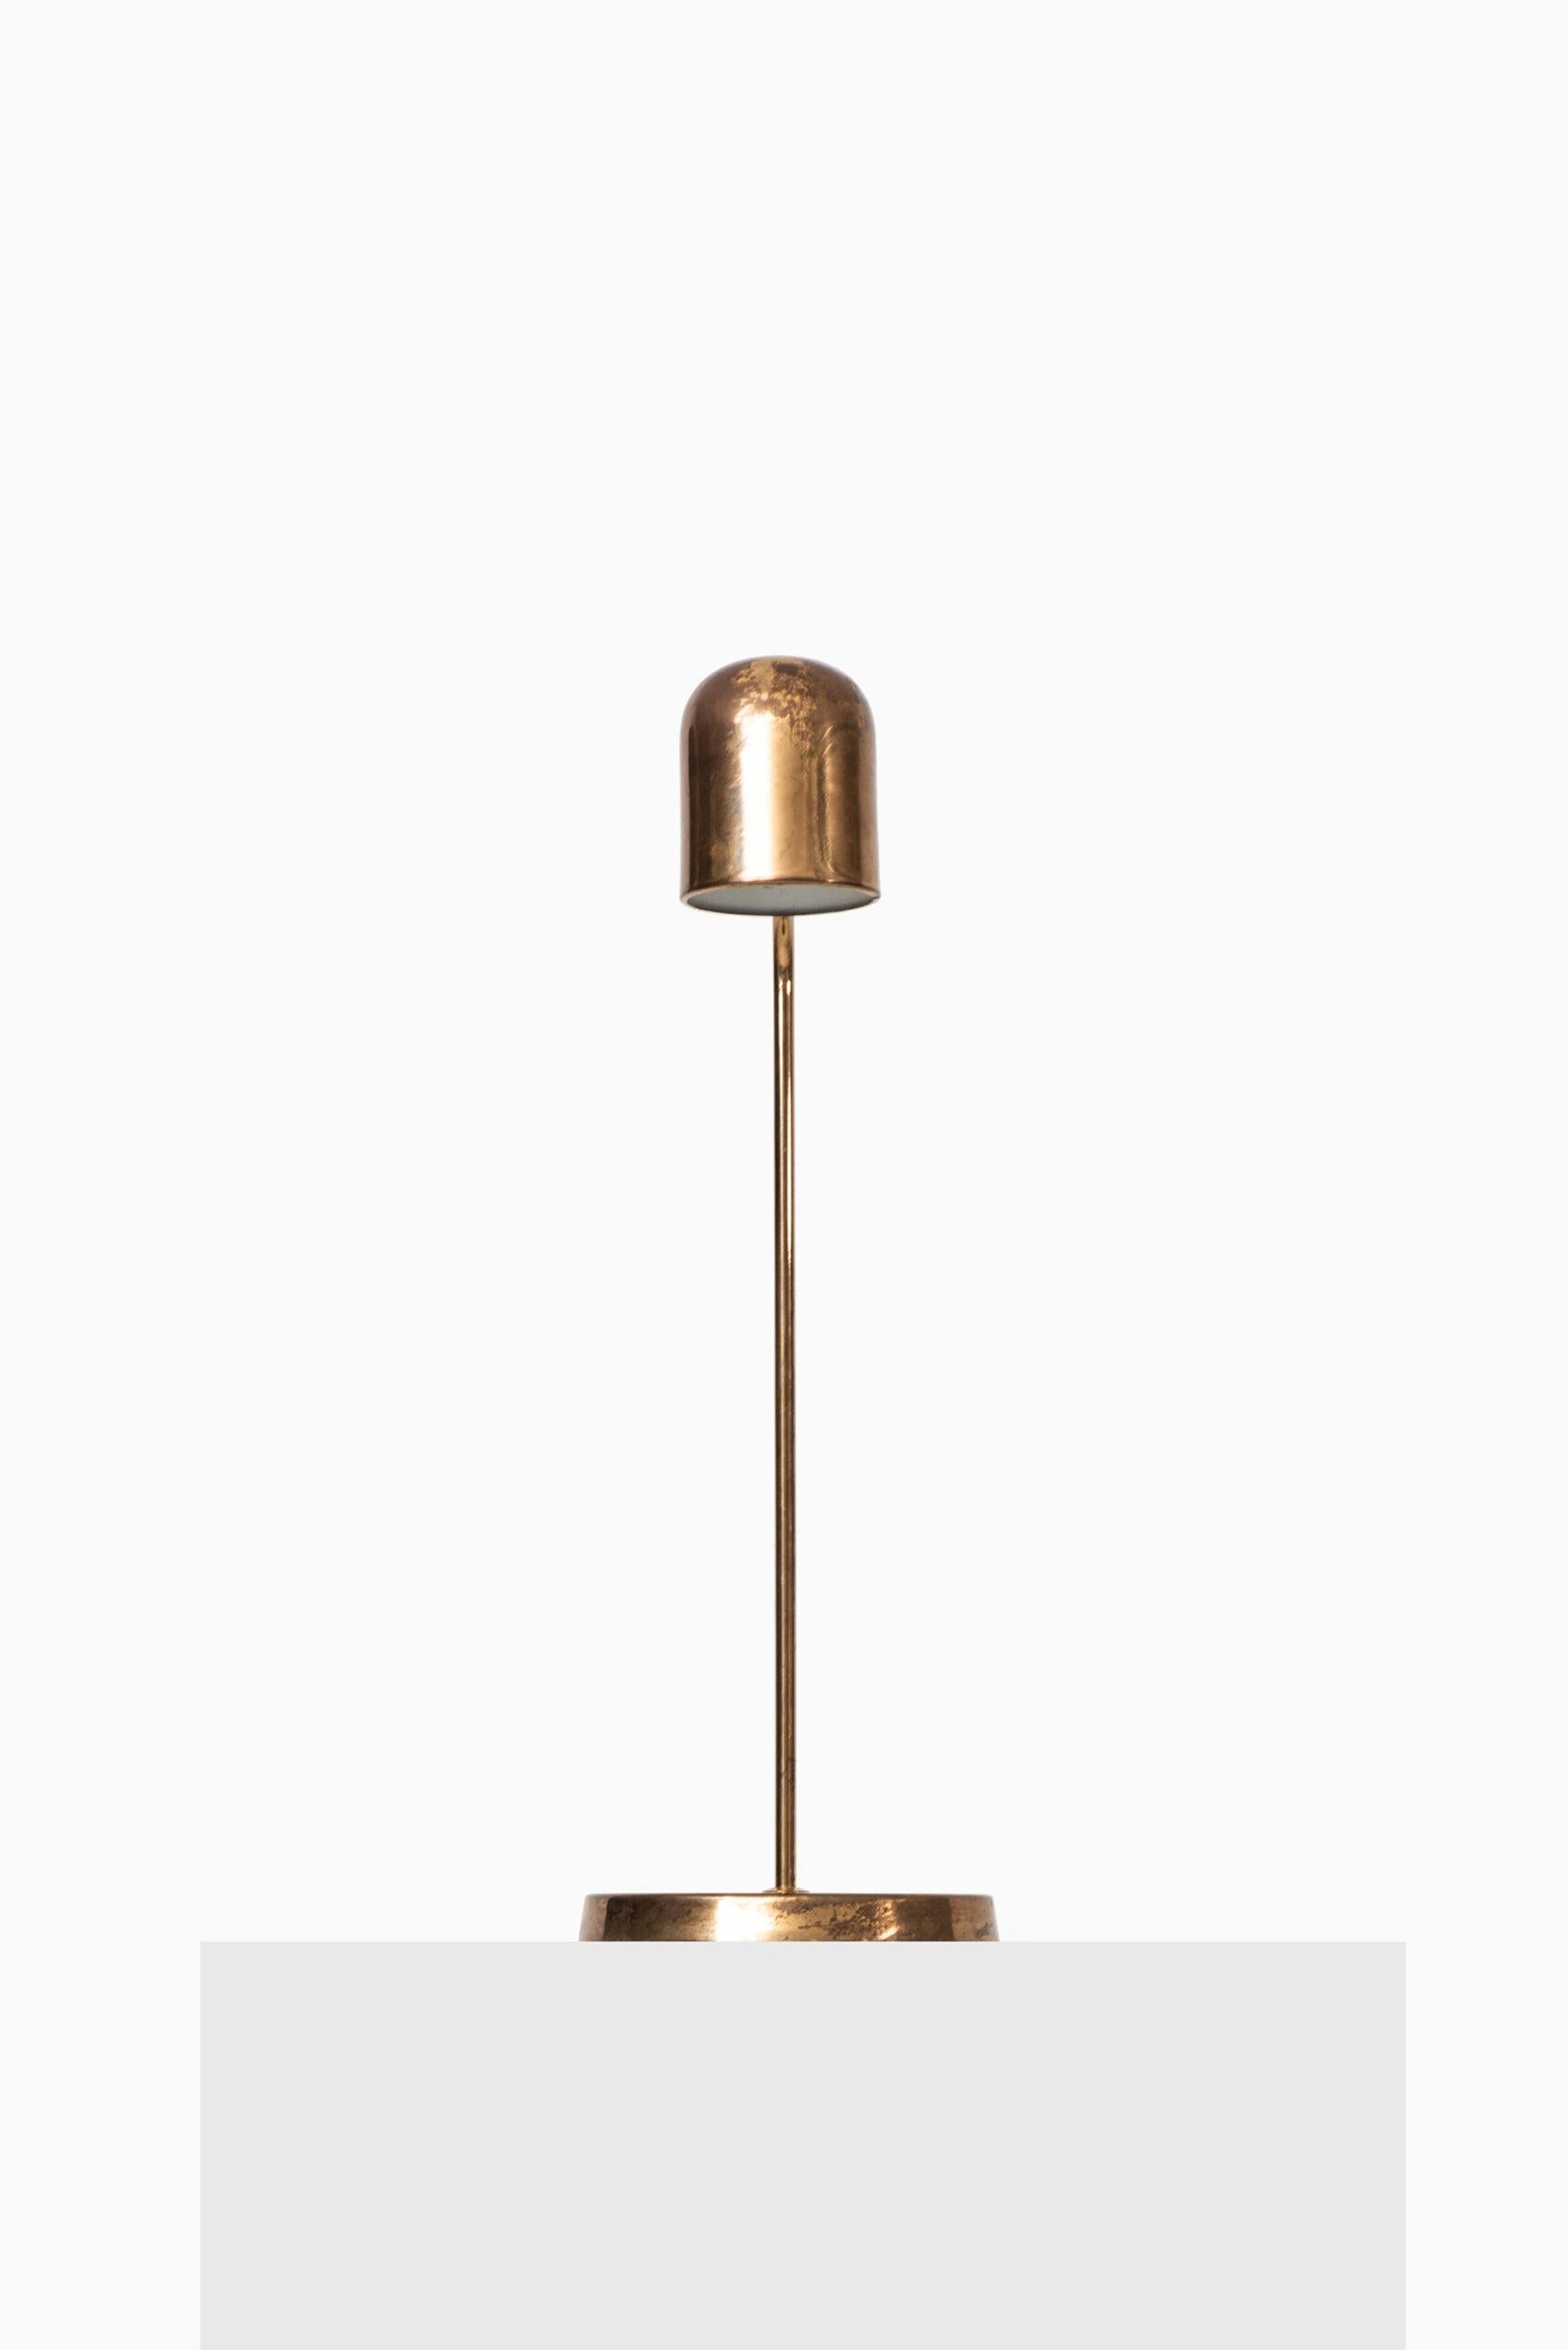 Seltene Tischlampe von unbekanntem Designer. Produziert von Bergbom in Schweden.